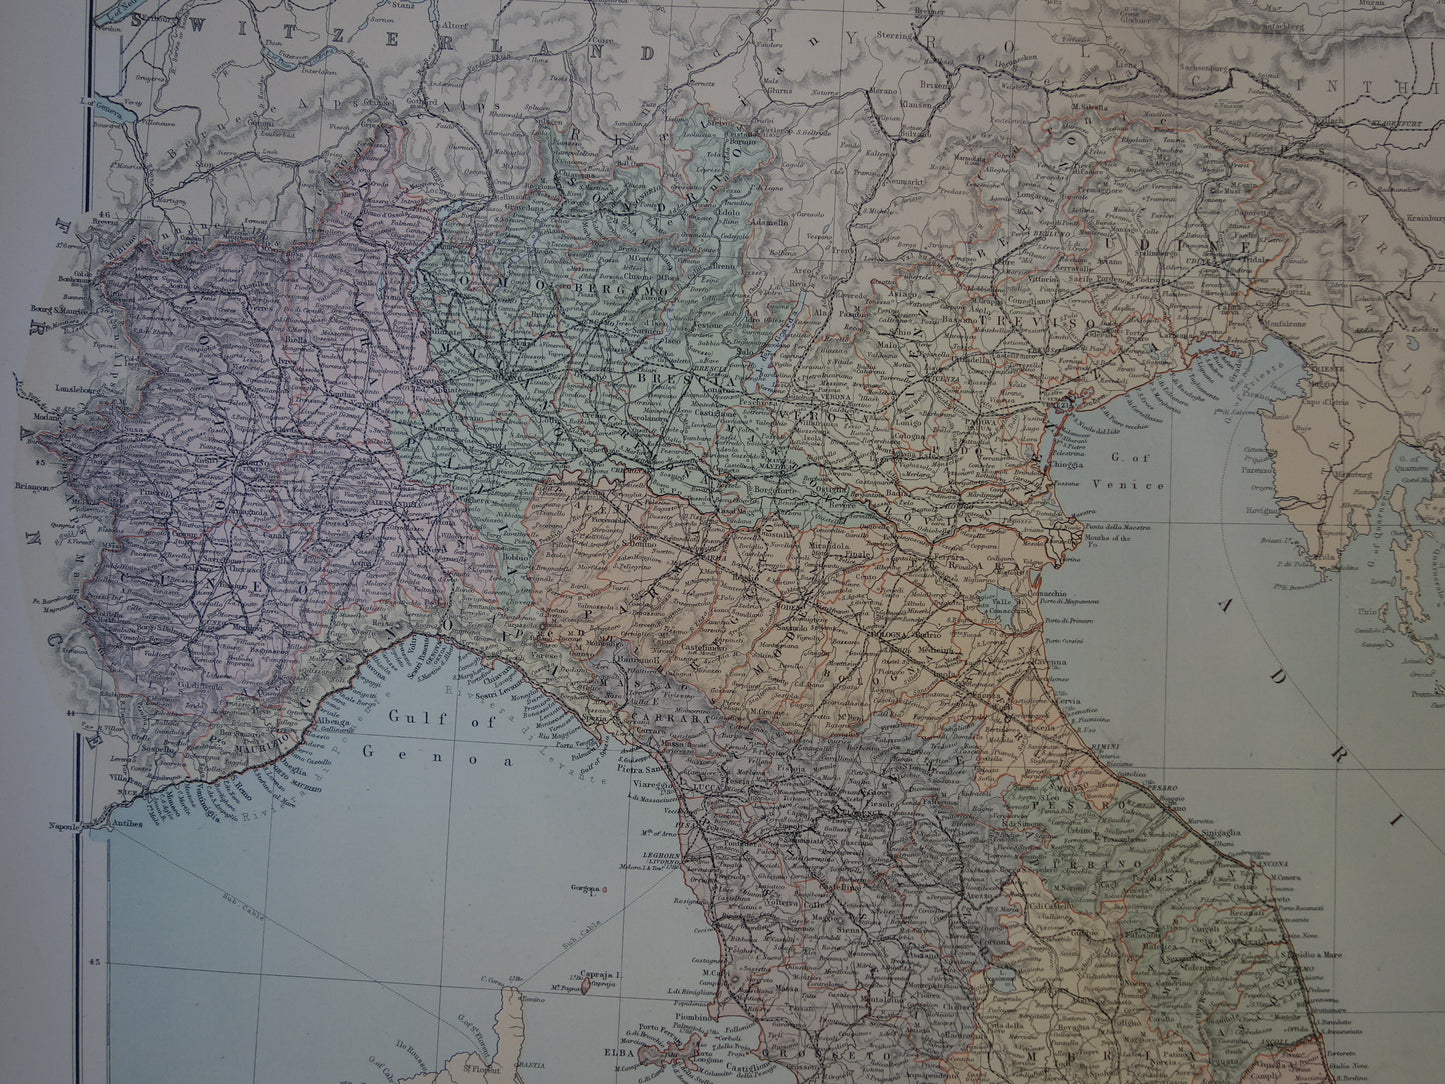 ITALIE oude landkaart van Italië uit 1890 originele zeer grote antieke kaart poster van Italie